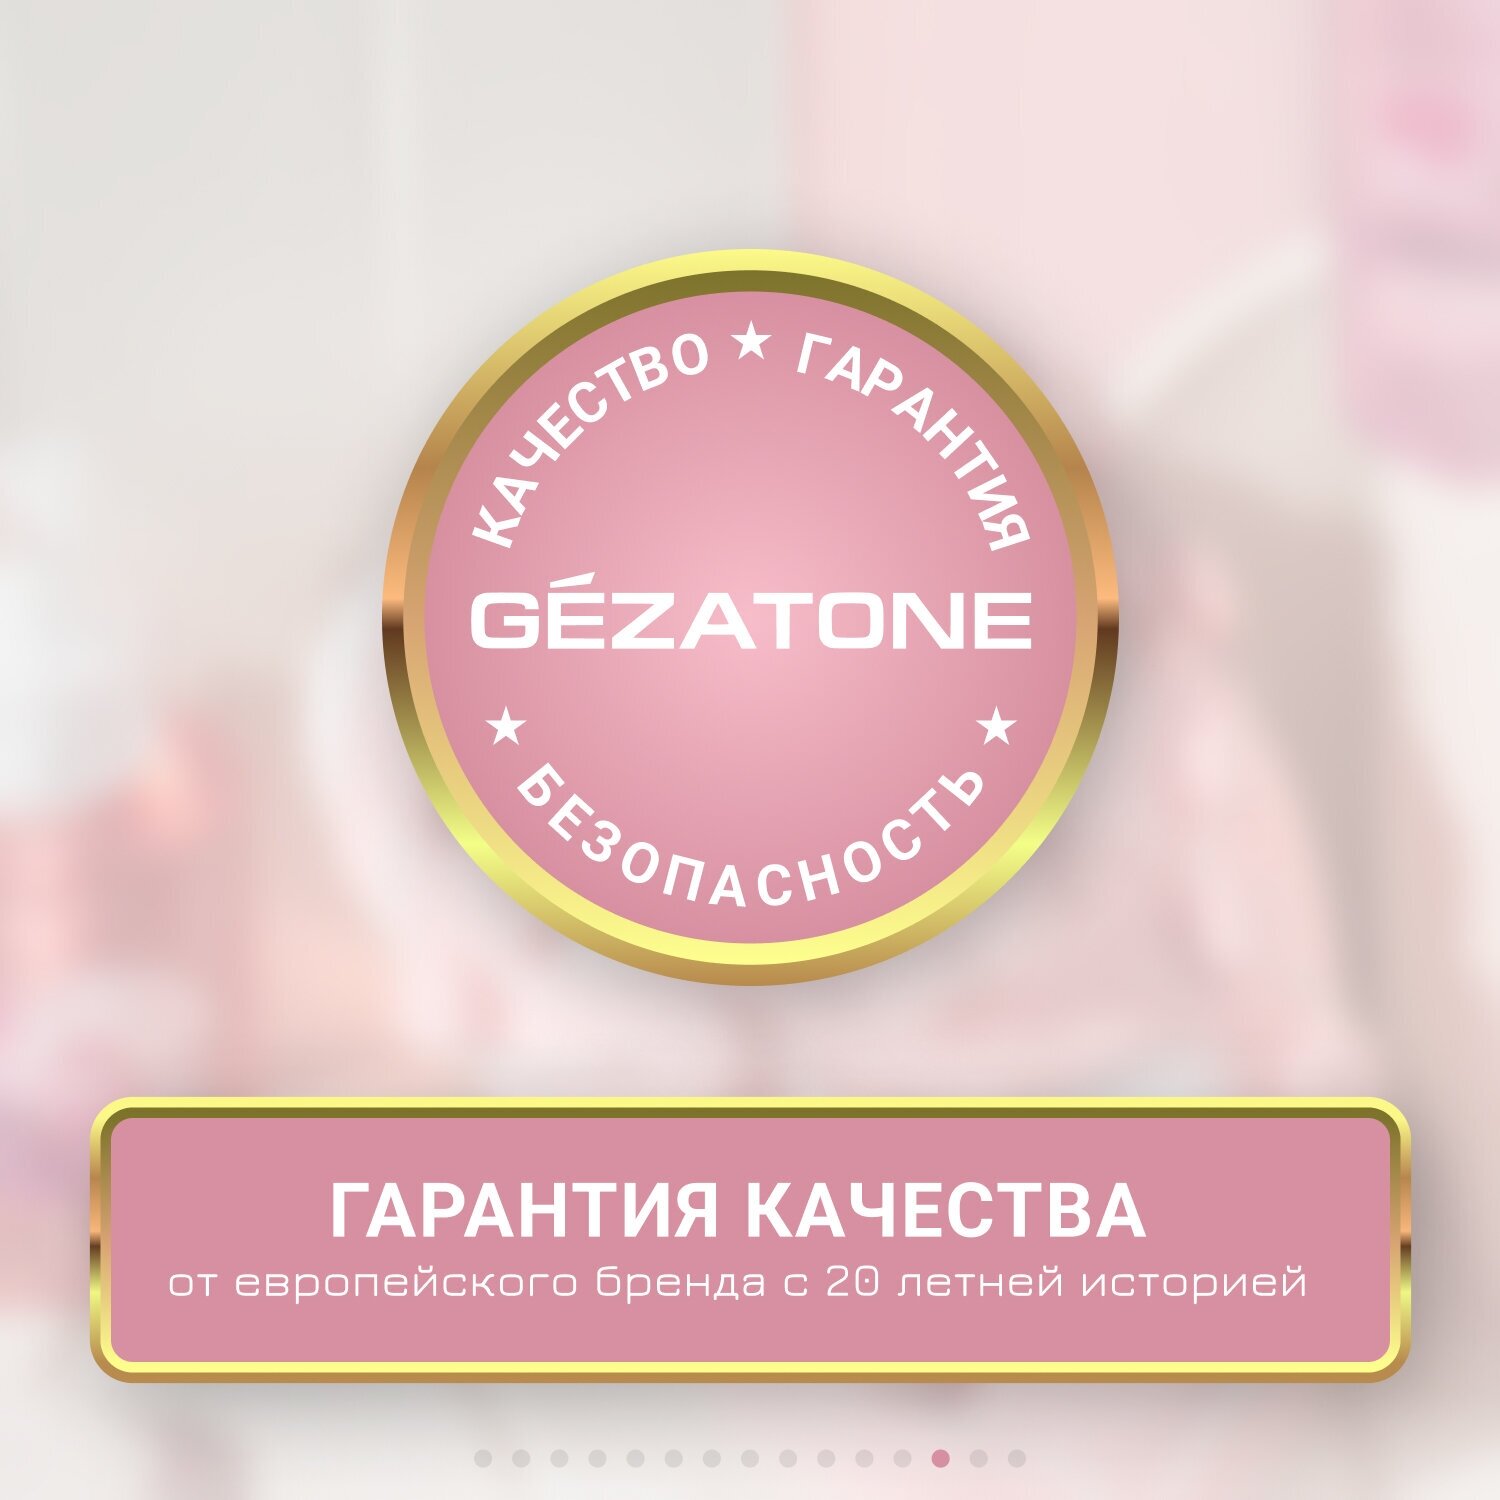 Gezatone Прибор для ухода и массажа лица (Gezatone, ) - фото №18